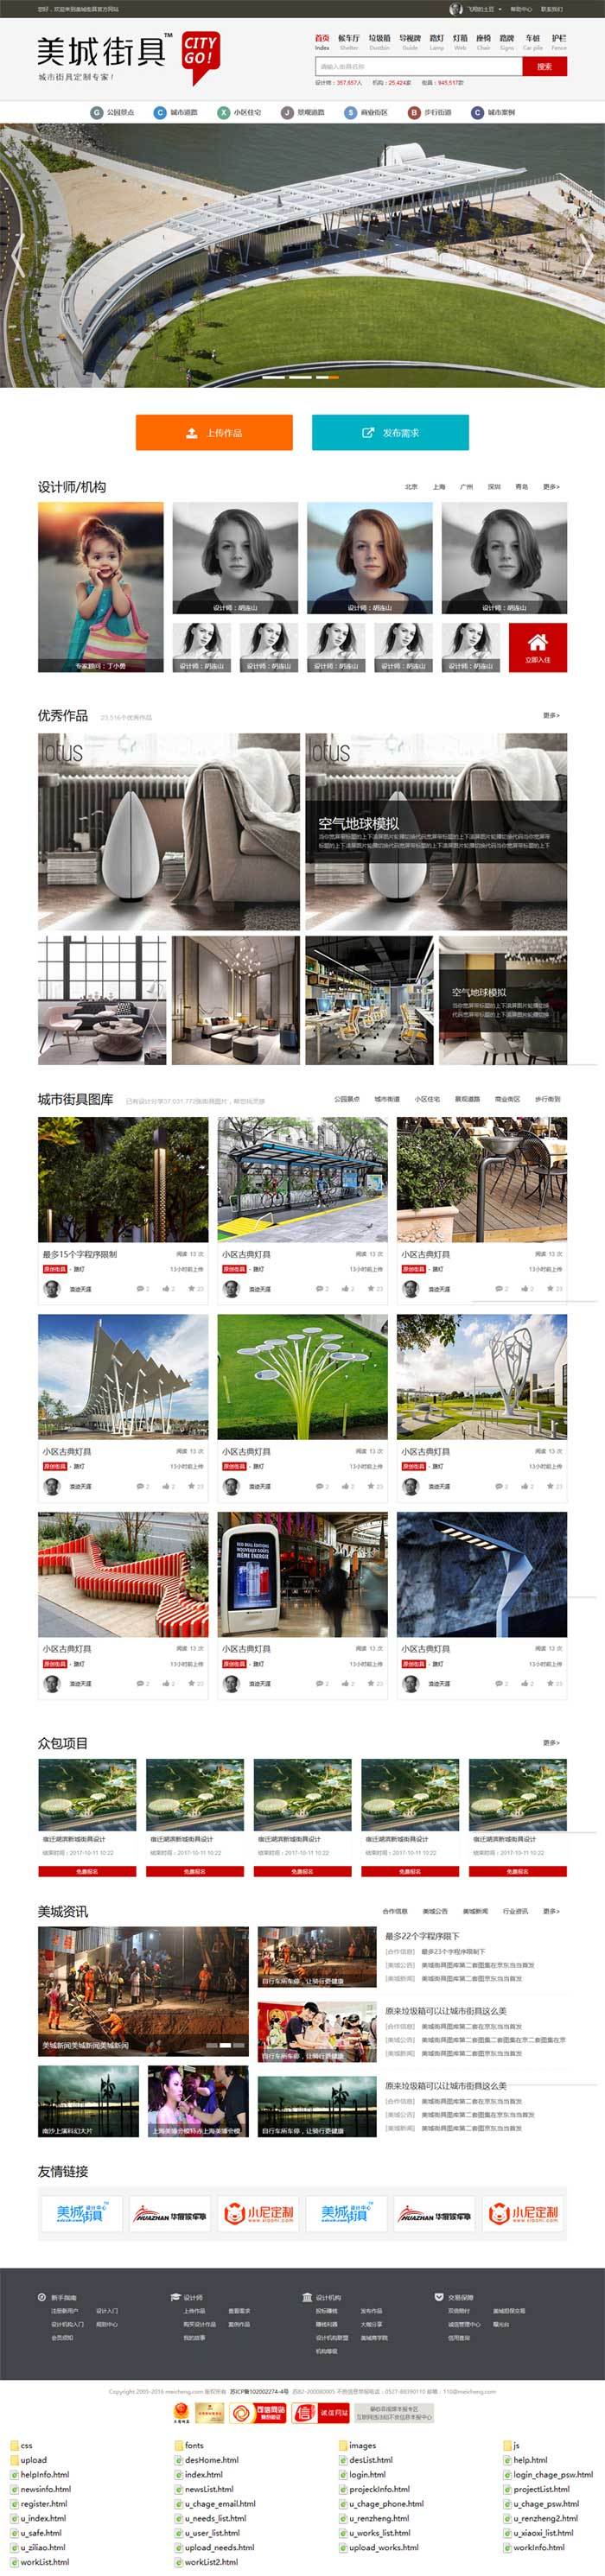 城市美化公司企业网站灰色简洁风格的模板下载